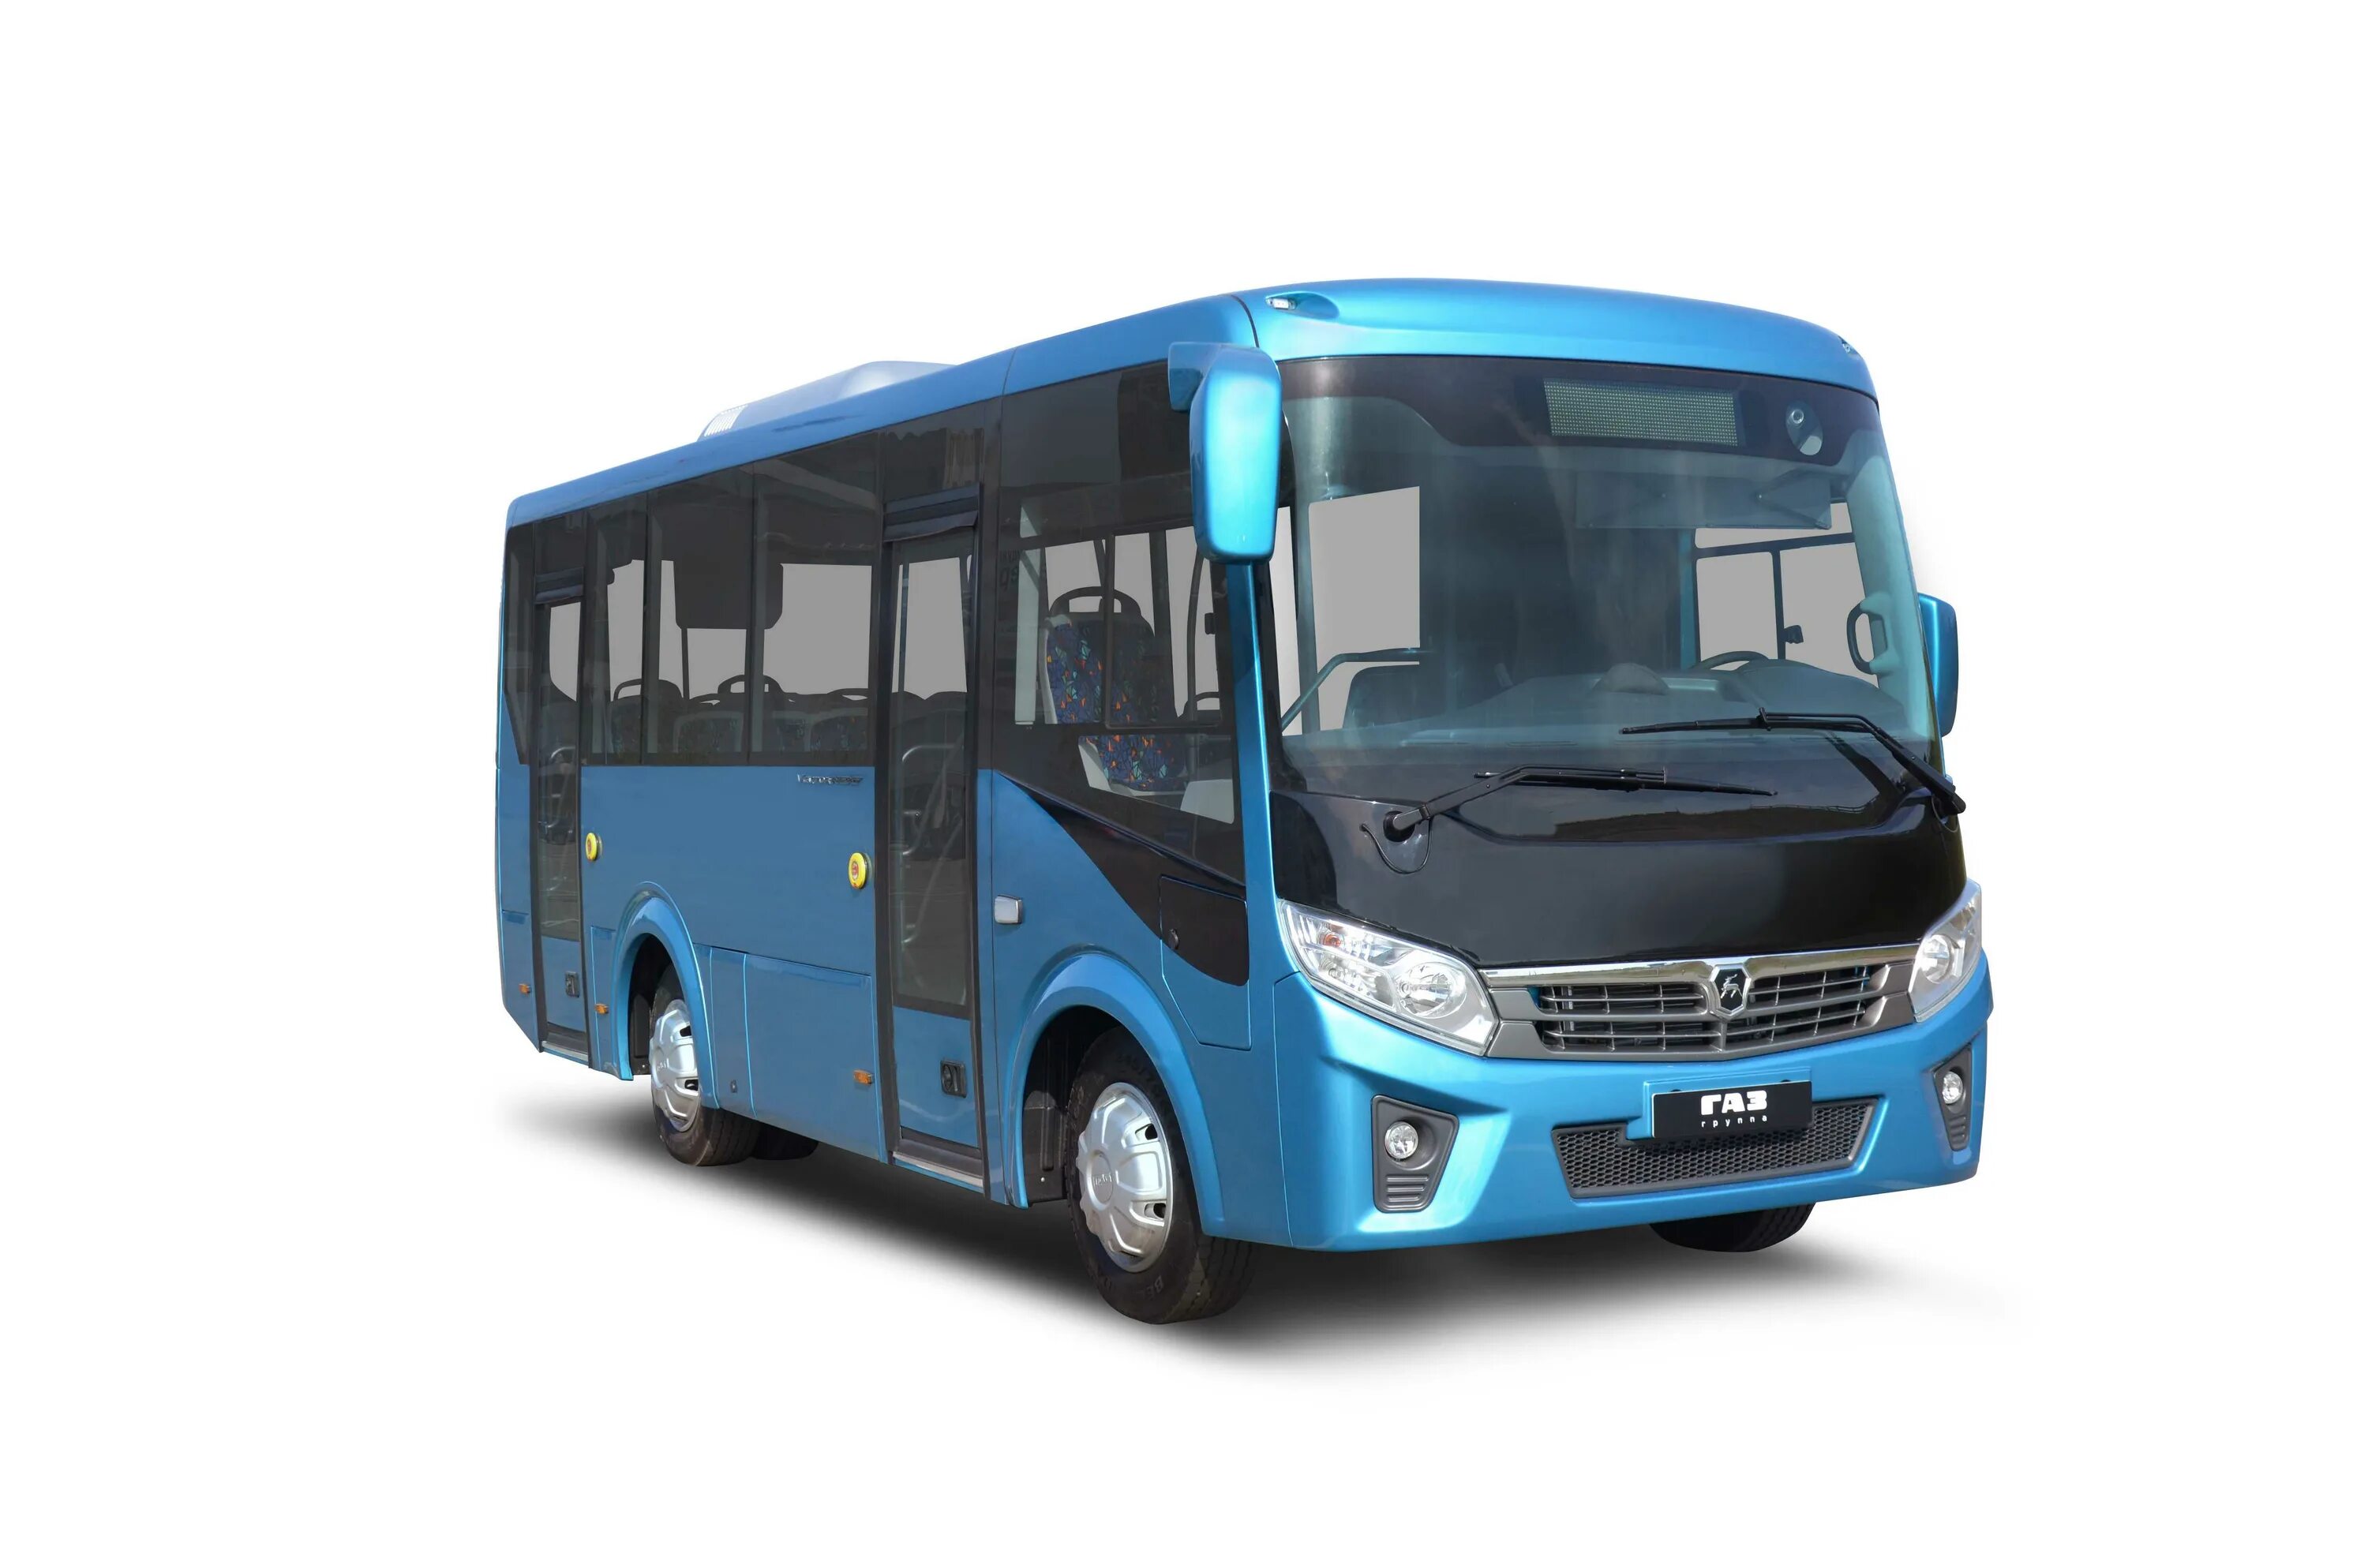 ПАЗ вектор Некст 7.6. Автобус ПАЗ 320405-04 вектор next. Автобус ГАЗ вектор Некст. ПАЗ-320405-04 vector next.